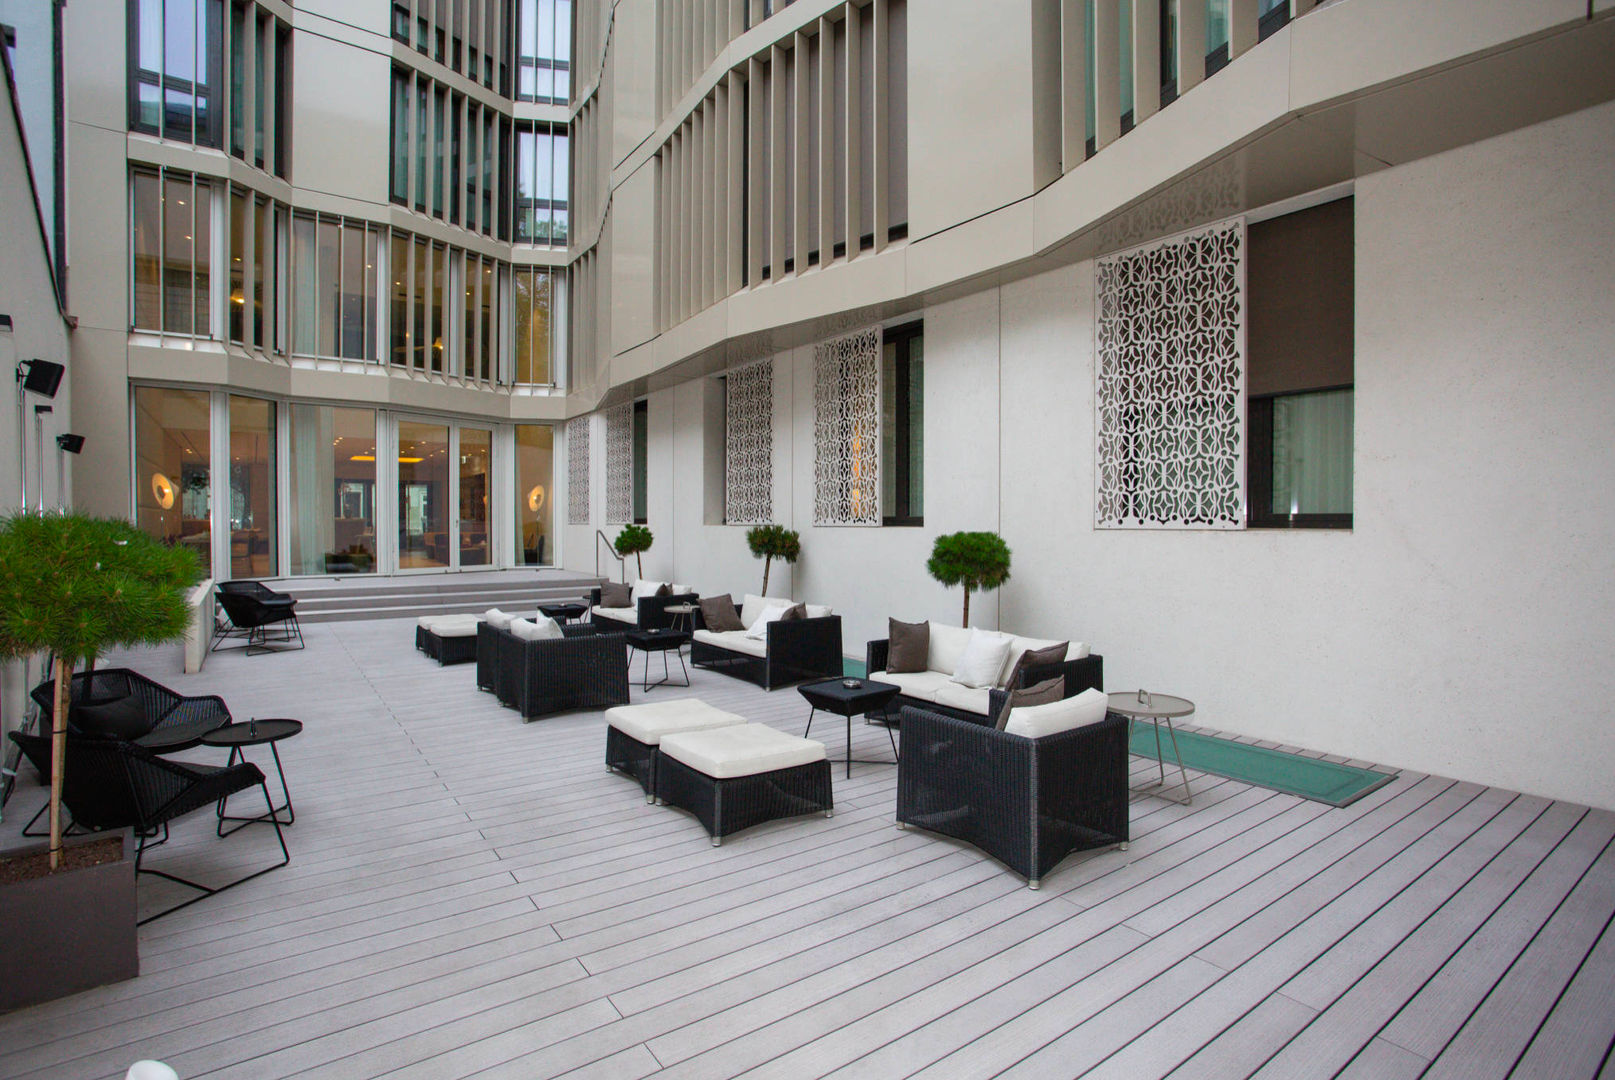 Hotel "The Passage", Bâle (Suisse), TimberTech TimberTech Balcones y terrazas modernos: Ideas, imágenes y decoración Compuestos de madera y plástico